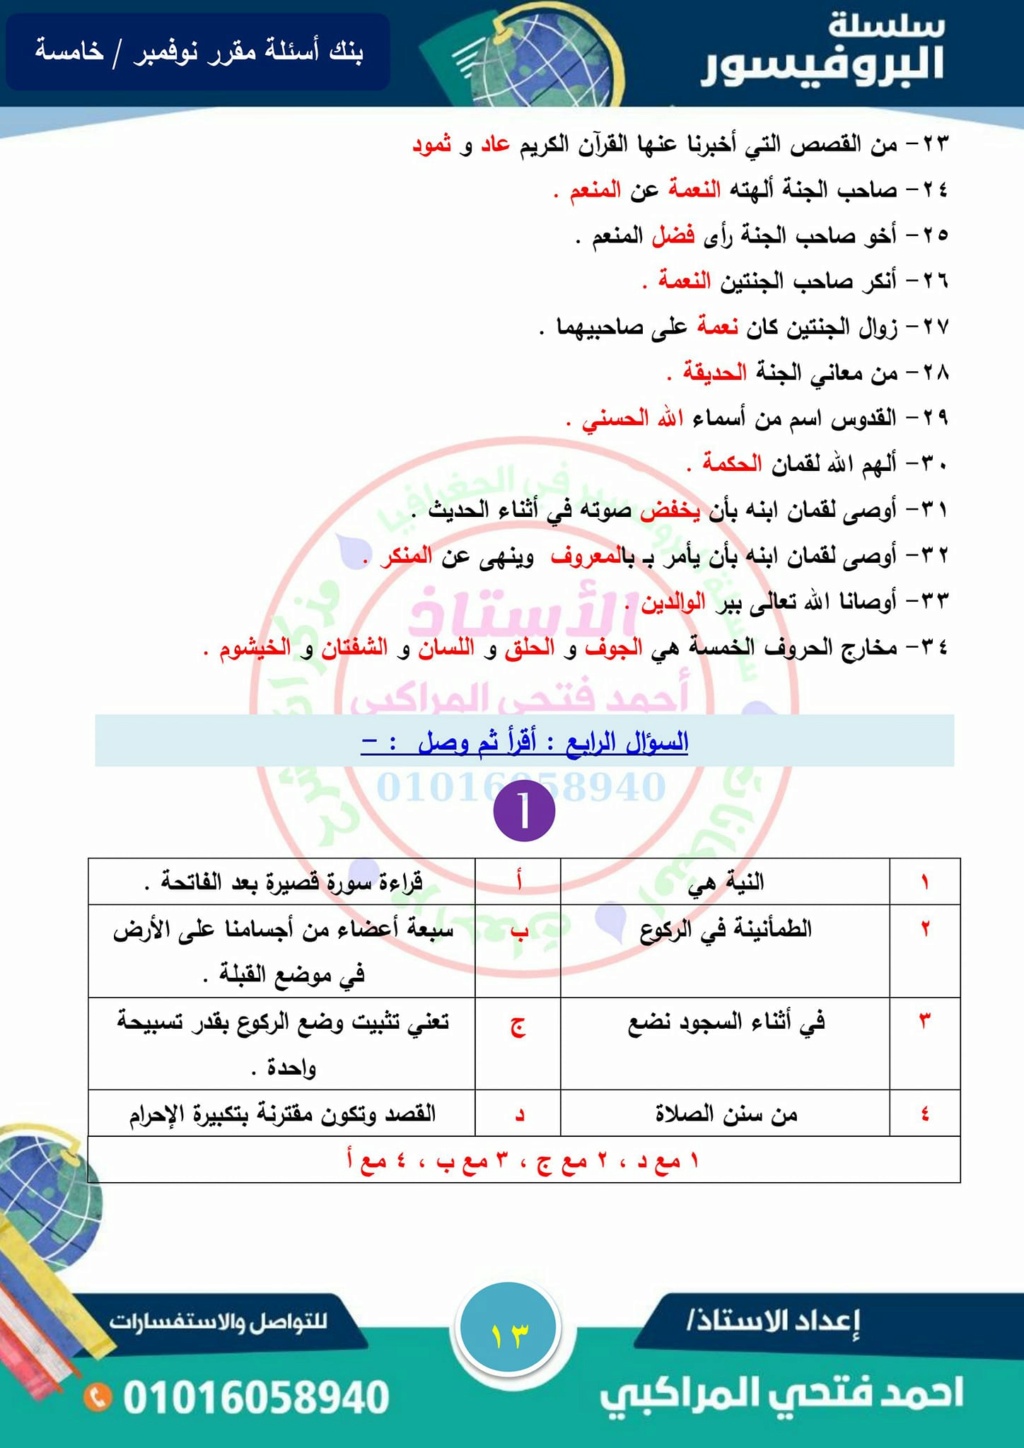 مراجعة البروفيسور في التربية الإسلامية للصف الخامس ترم أول شهر نوفمبر 13_img22